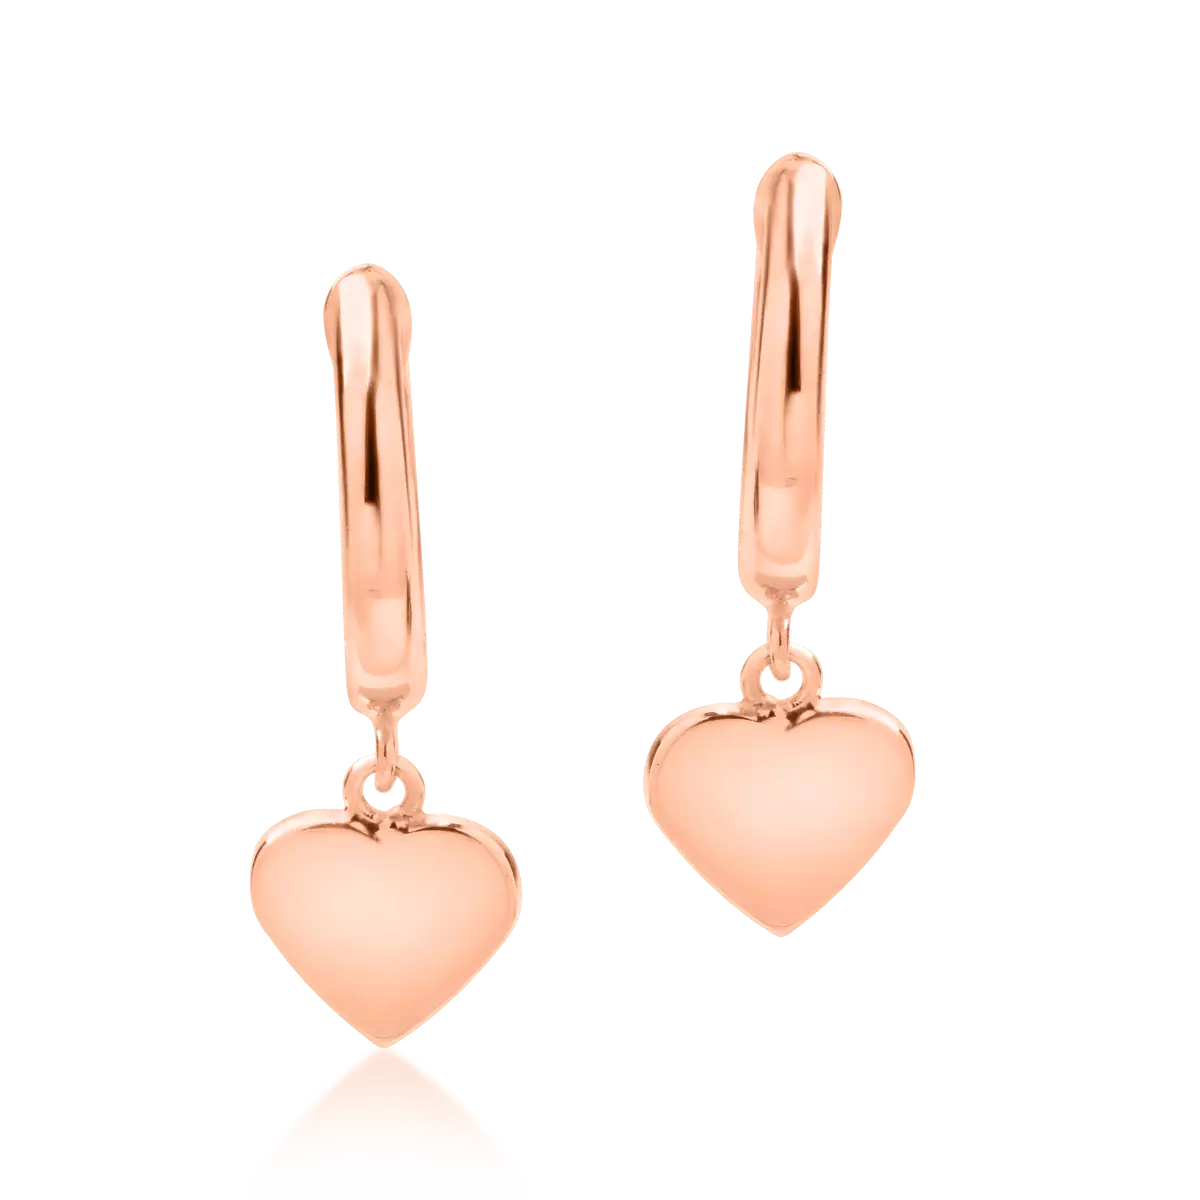 14K rose gold heart earrings